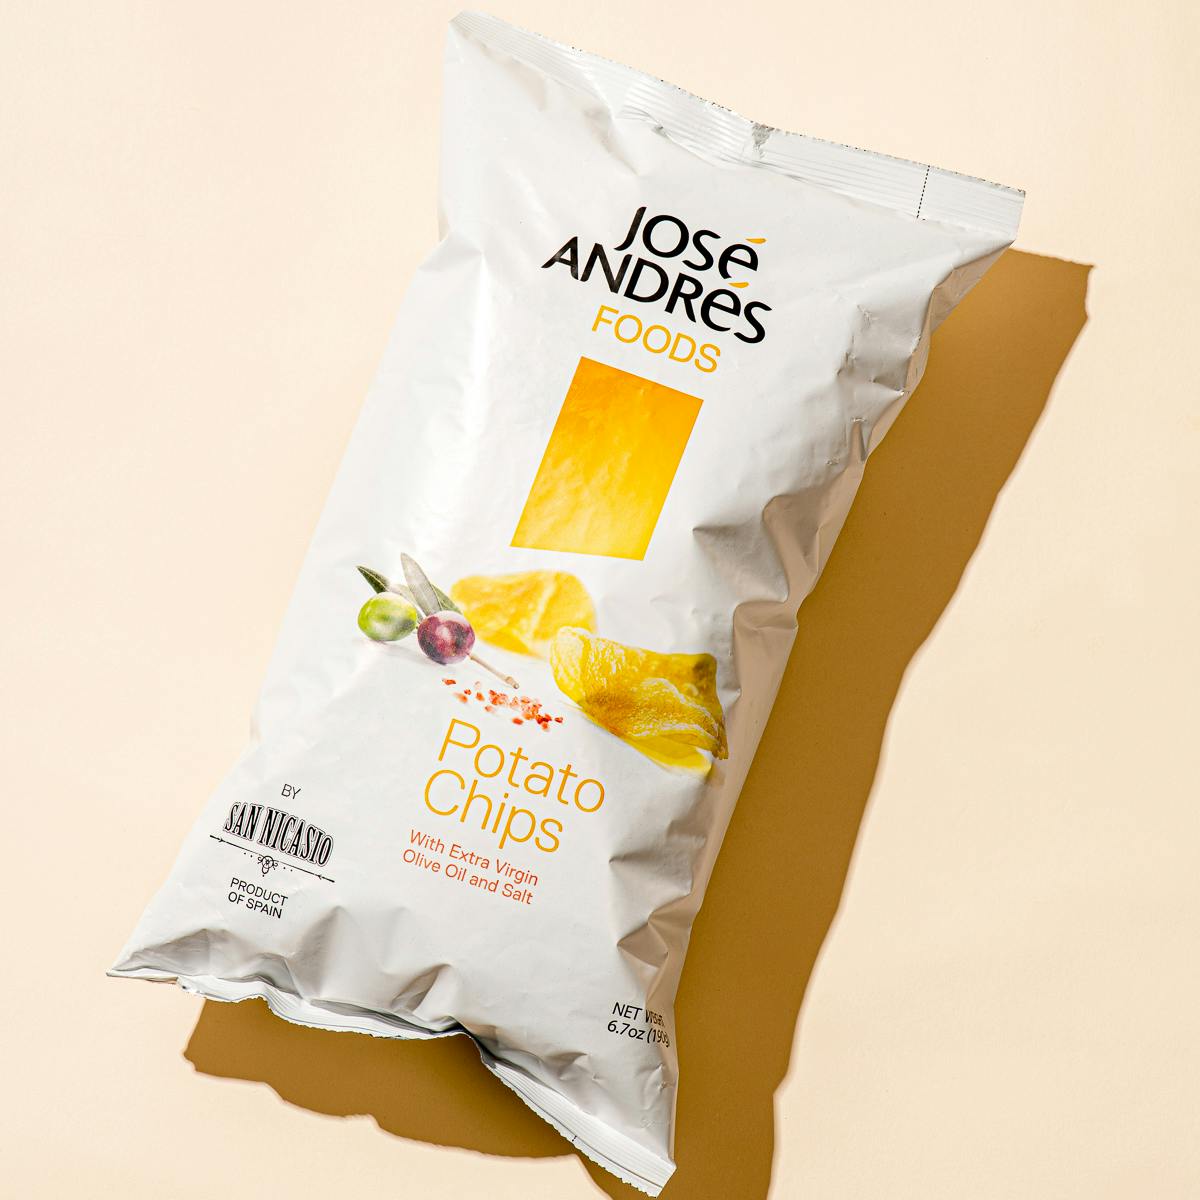 Potato Chip Omelette - José Andrés